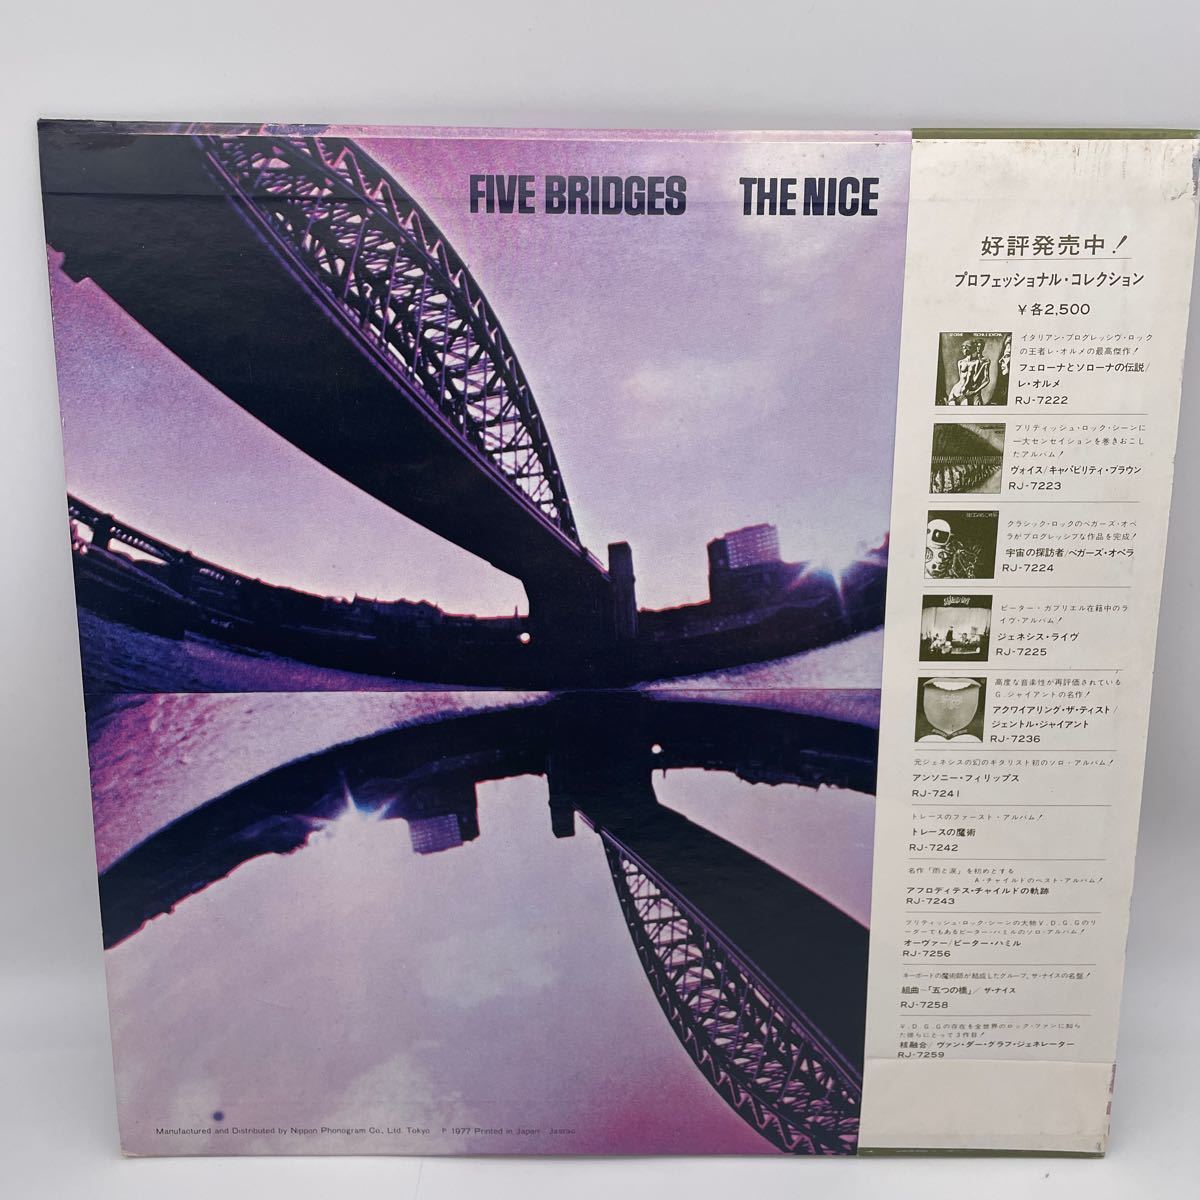 【帯付】ザ・ナイス/組曲/五つの橋/The Nice/The Five Bridges/レコード/LP/RJ-7258/キースエマーソン_画像2